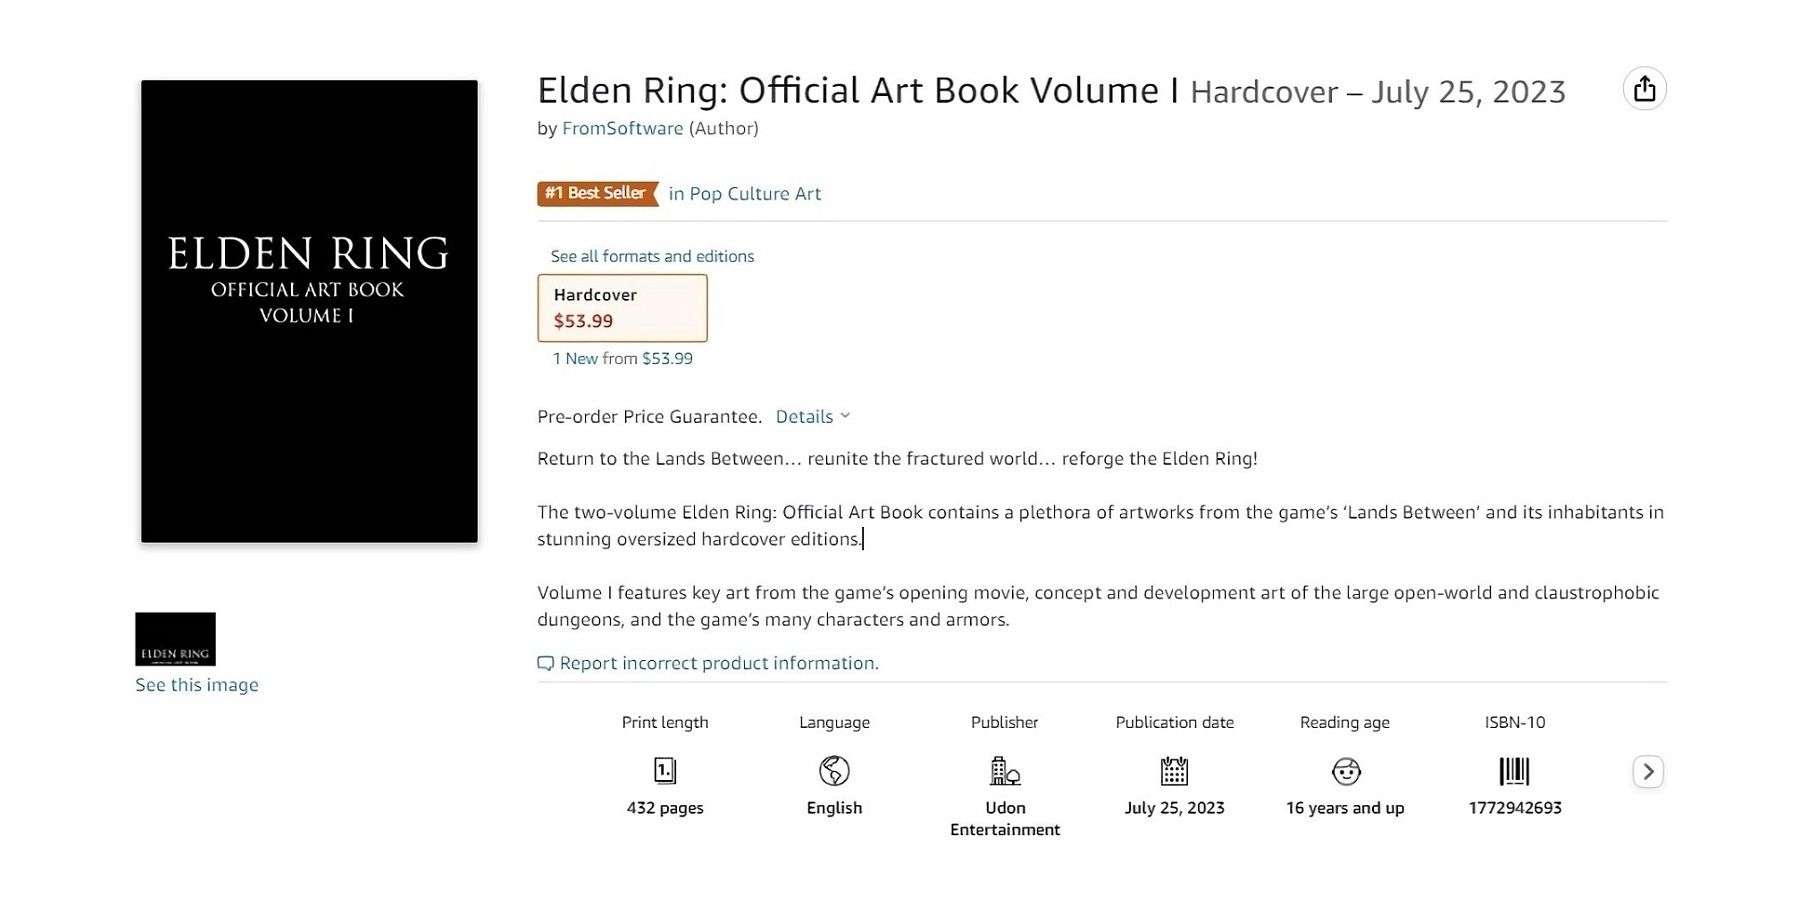 Les artbooks officiels ELDEN RING arrivent chez Mana Books !